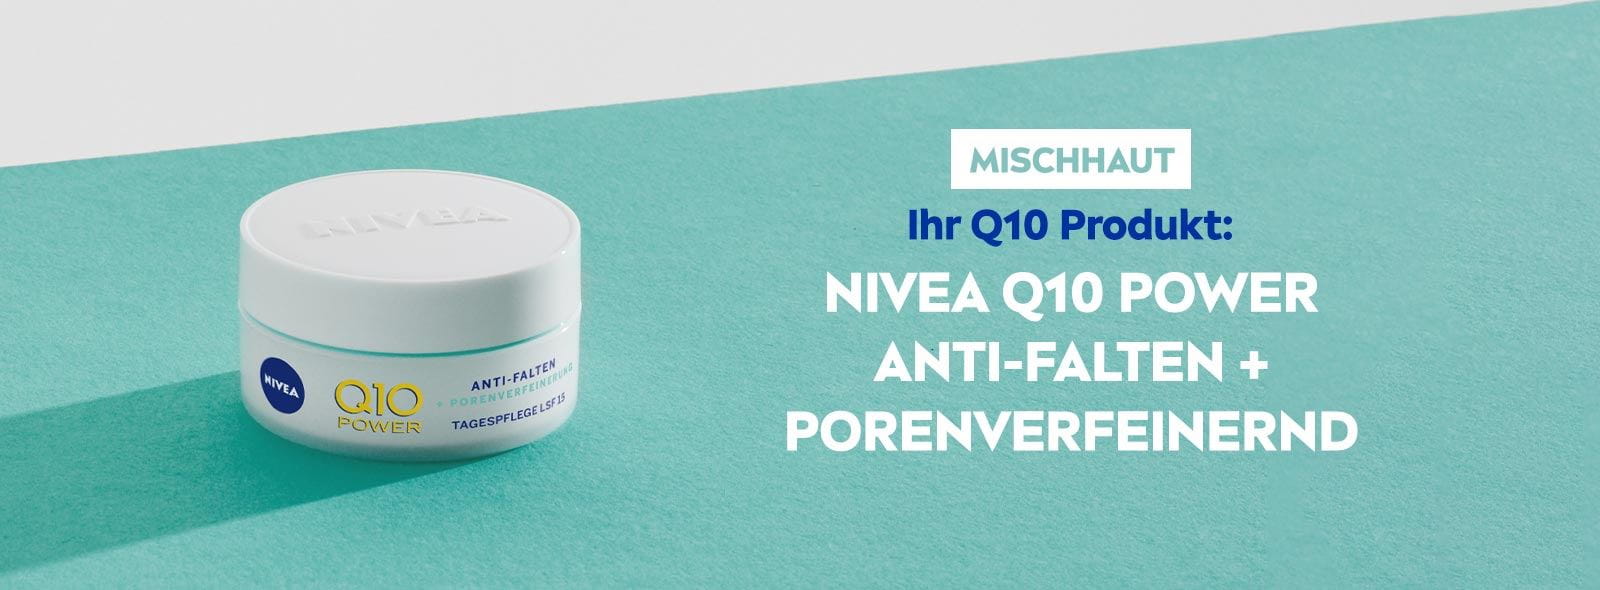 NIVEA Q10 für Mischhaut